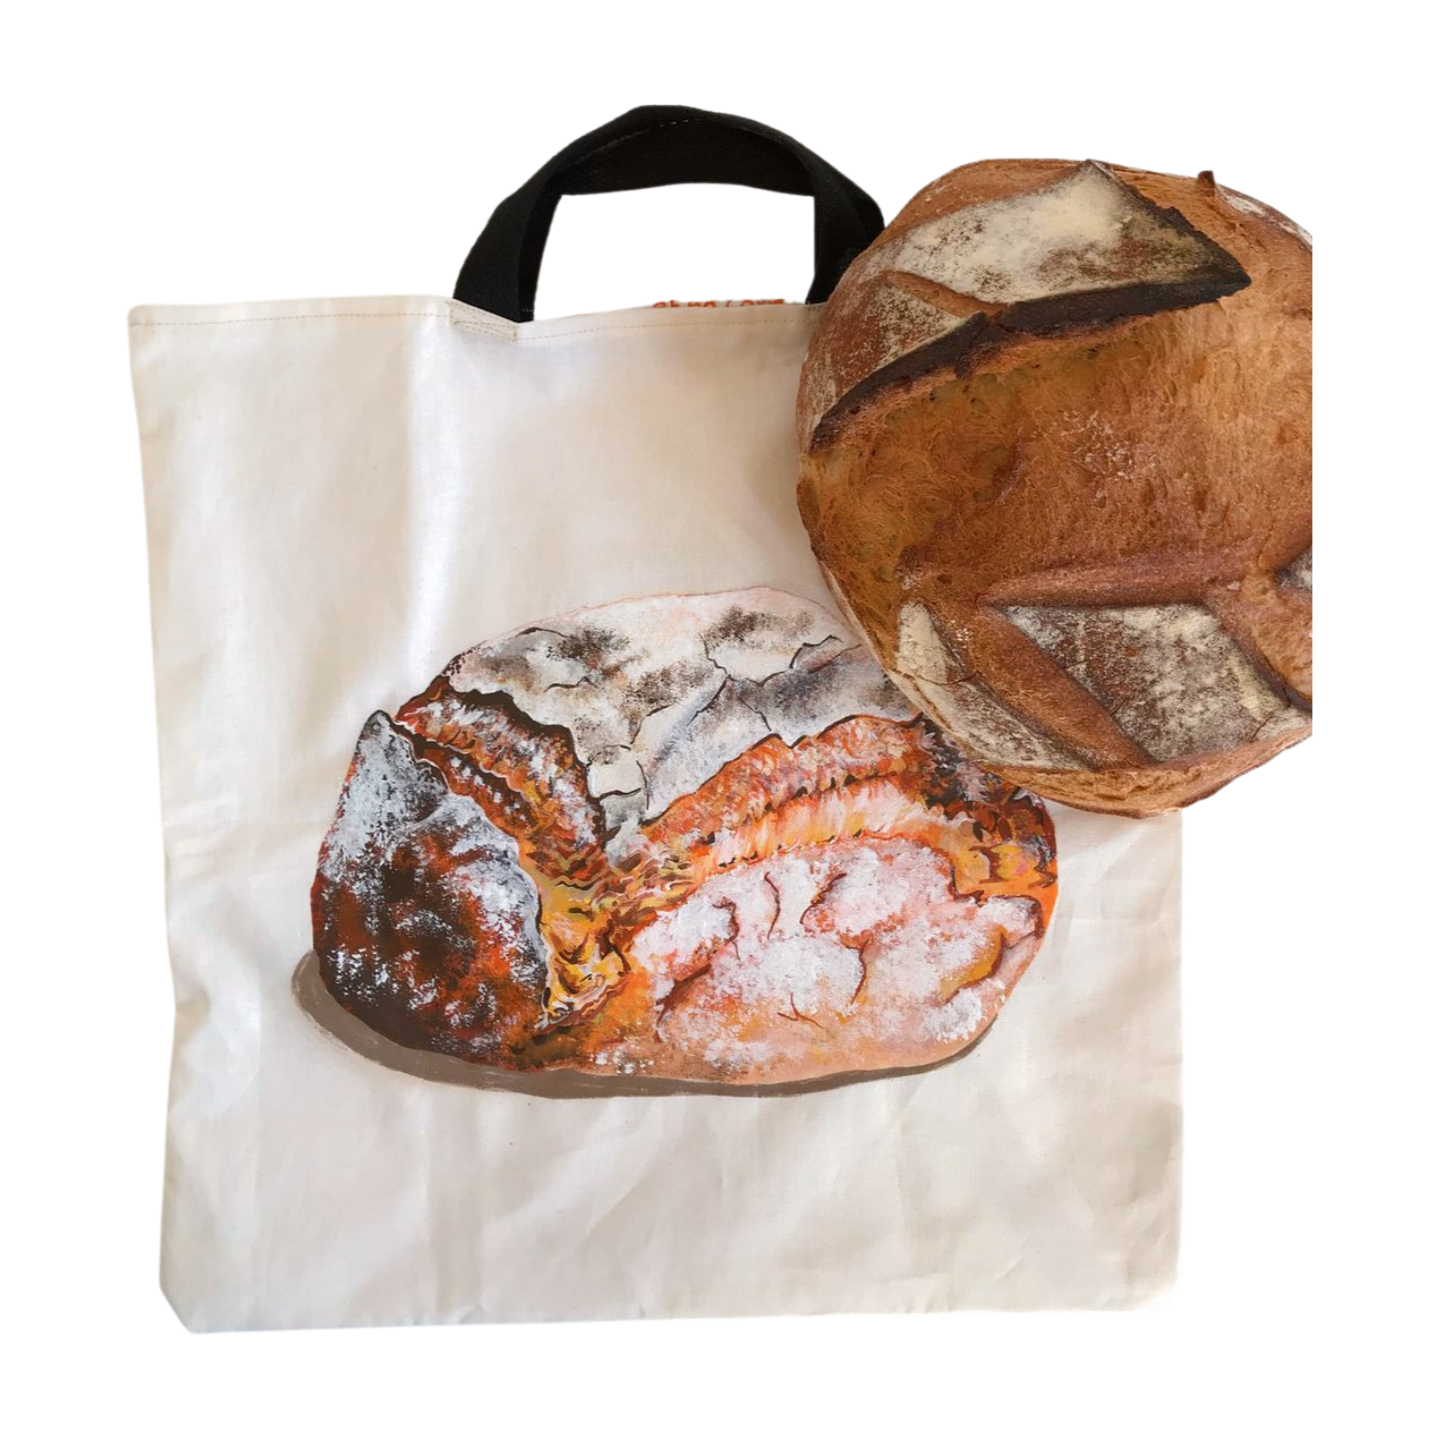 Sac à pain en coton avec une belle miche réaliste peinte à la main